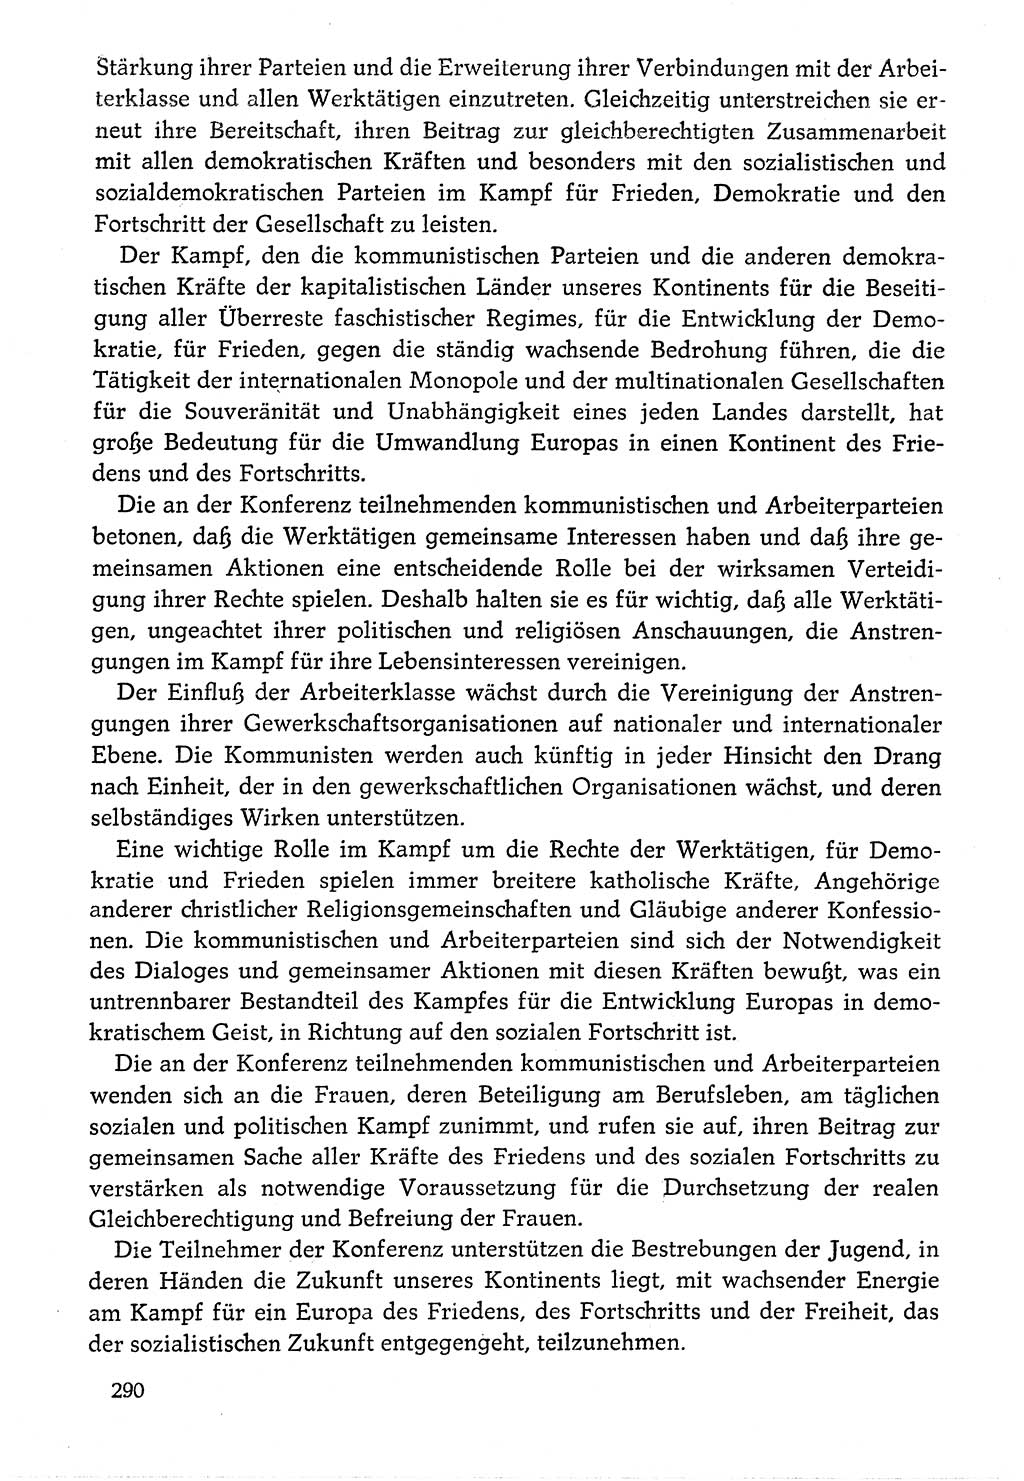 Dokumente der Sozialistischen Einheitspartei Deutschlands (SED) [Deutsche Demokratische Republik (DDR)] 1976-1977, Seite 290 (Dok. SED DDR 1976-1977, S. 290)